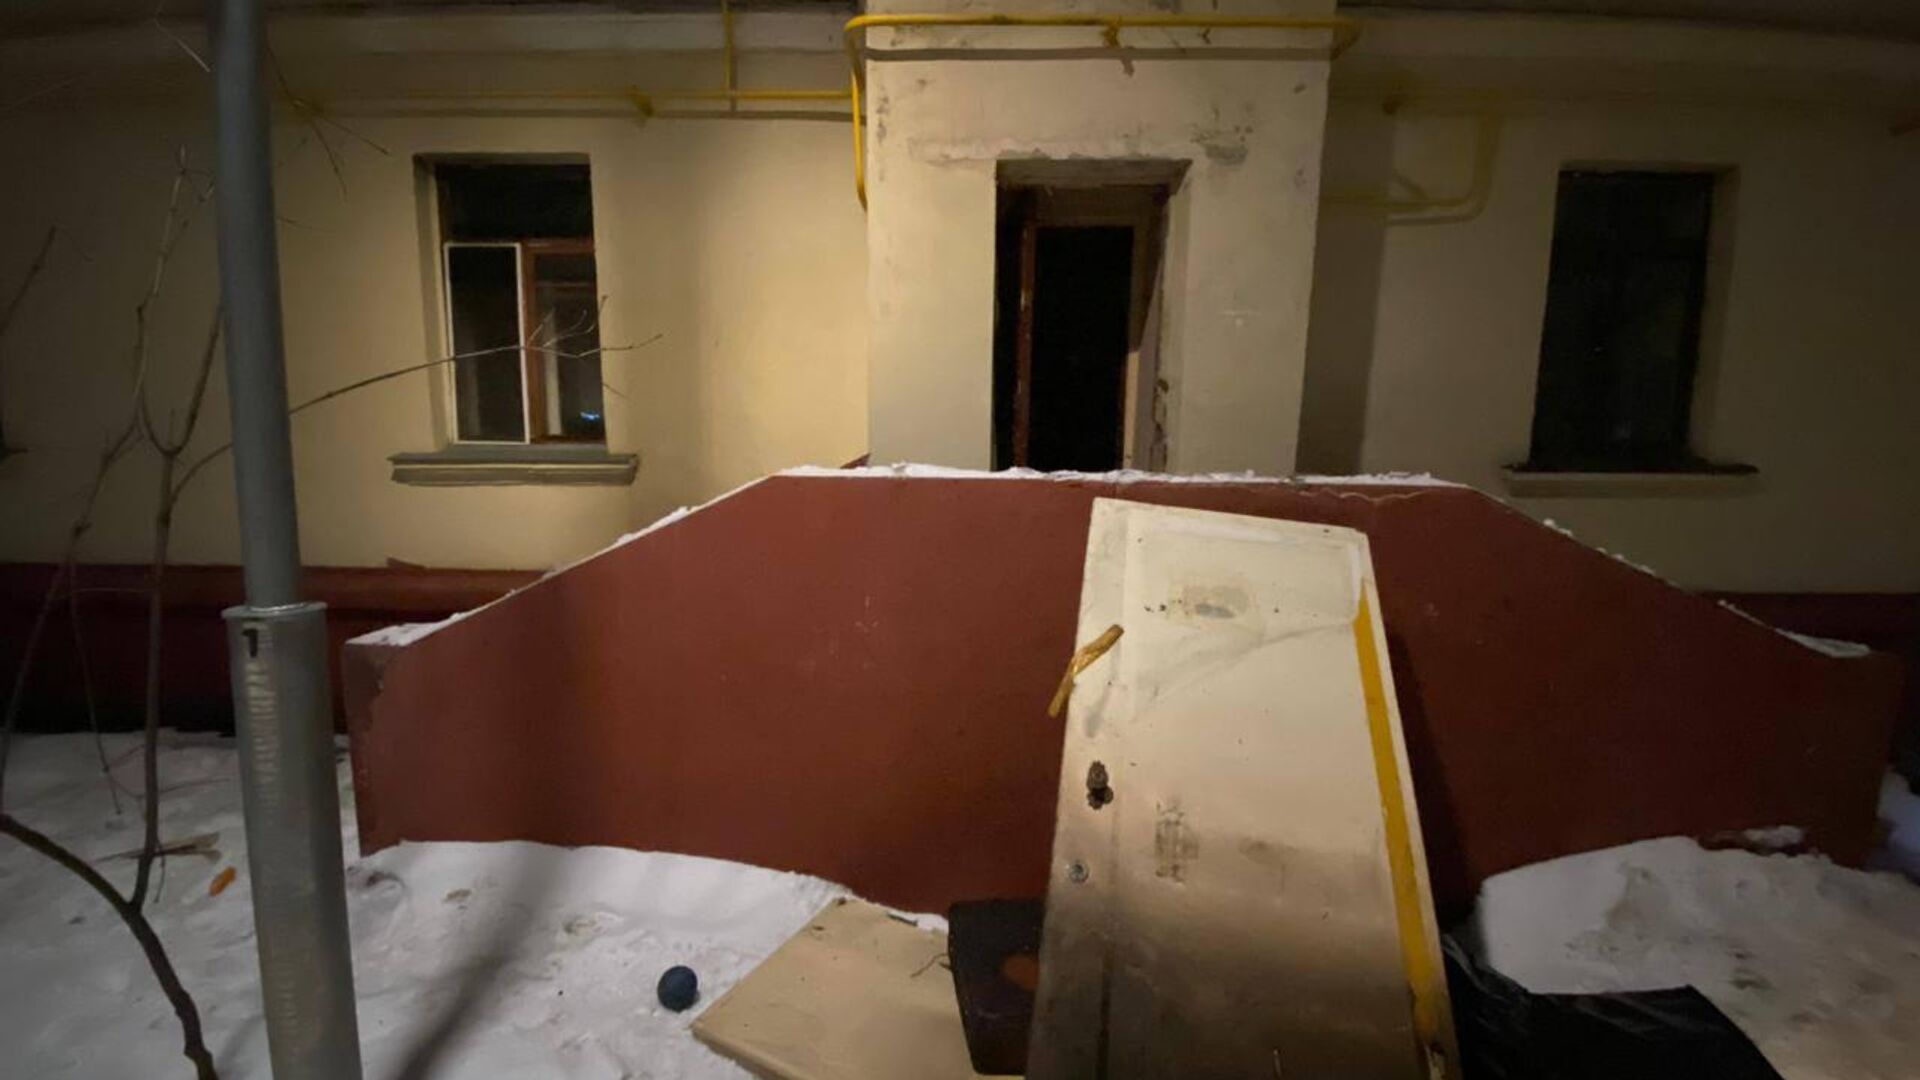 Дом на улице Чистопольская в Москве, в котором произошло двойное убийство - РИА Новости, 1920, 01.02.2023